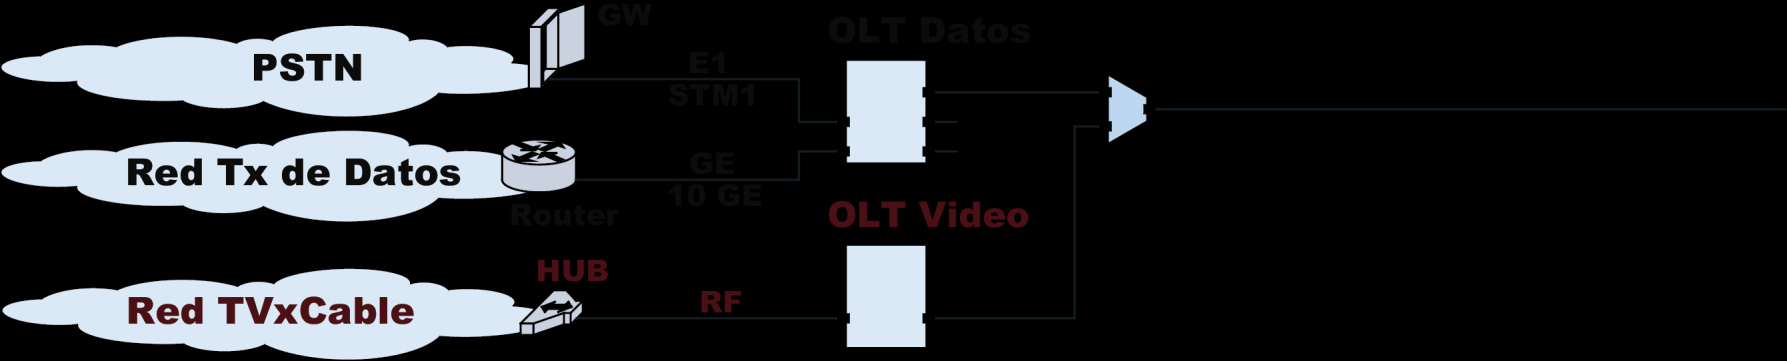 Elementos de Red Oficina Central La OLT es un elemento activo que interconecta la red PON con las otras redes.